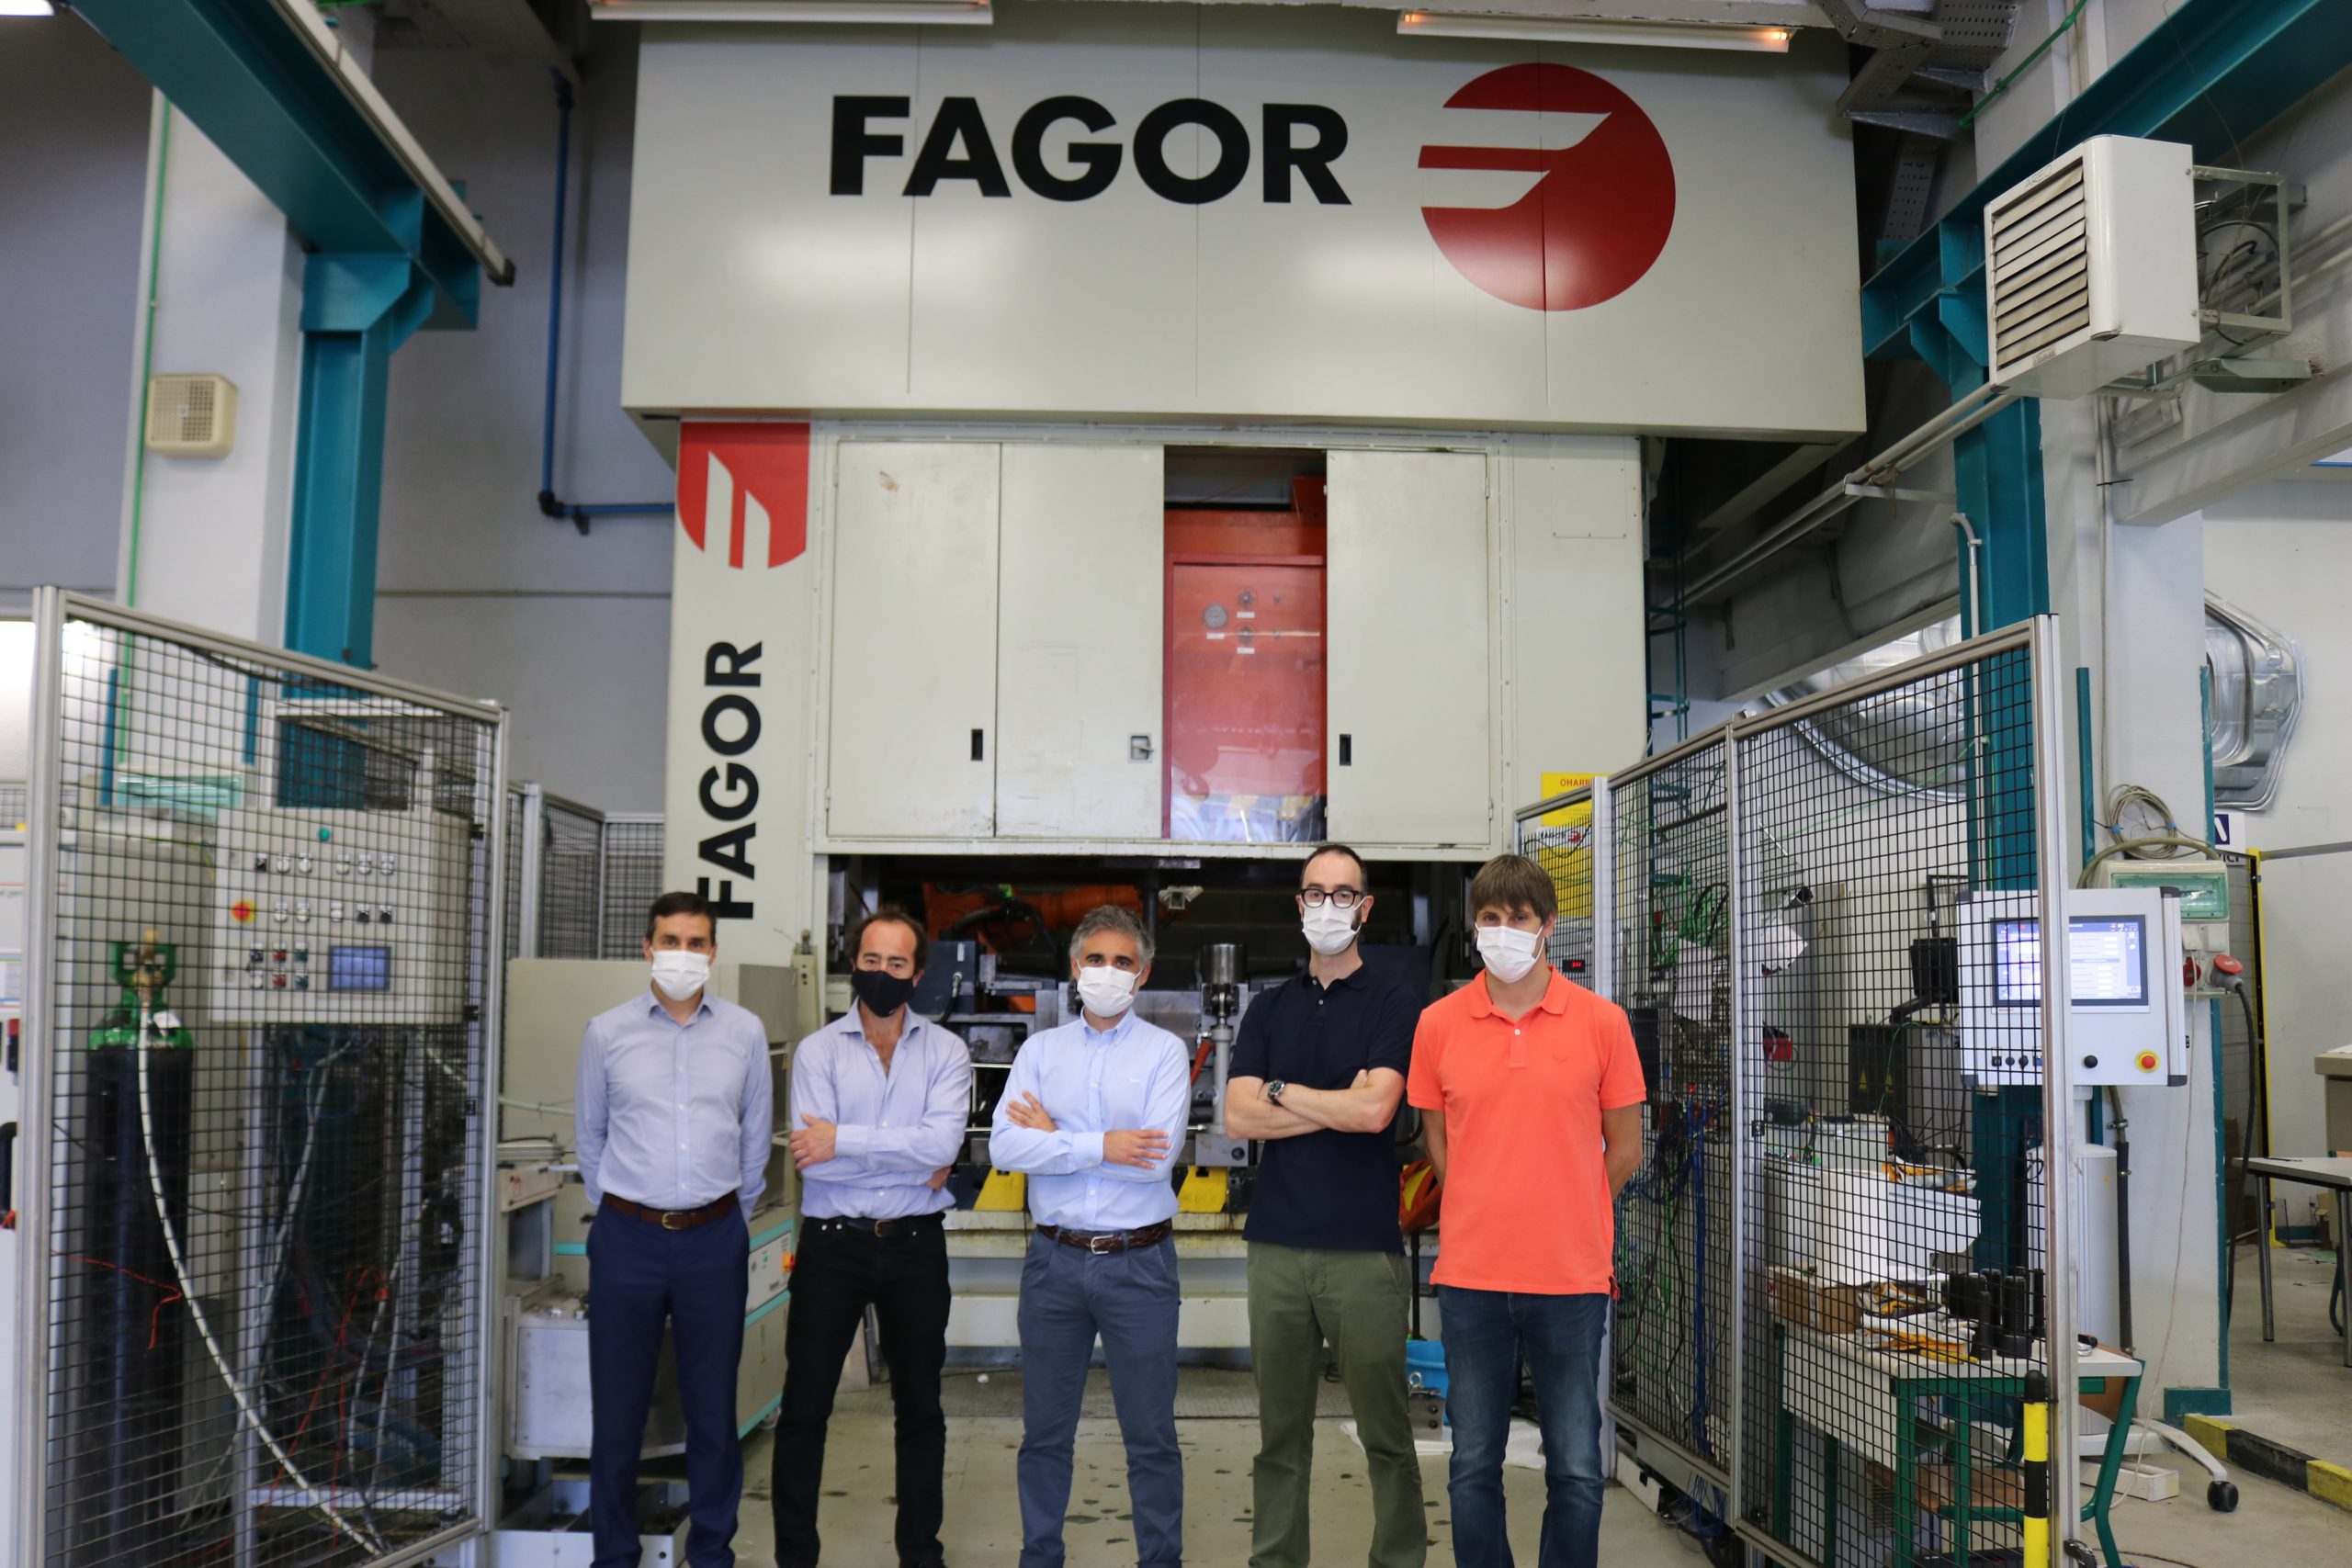 Fagor Arrasate y MU refuerzan su alianza para impulsar la fabricación inteligente y la Industria 4.0